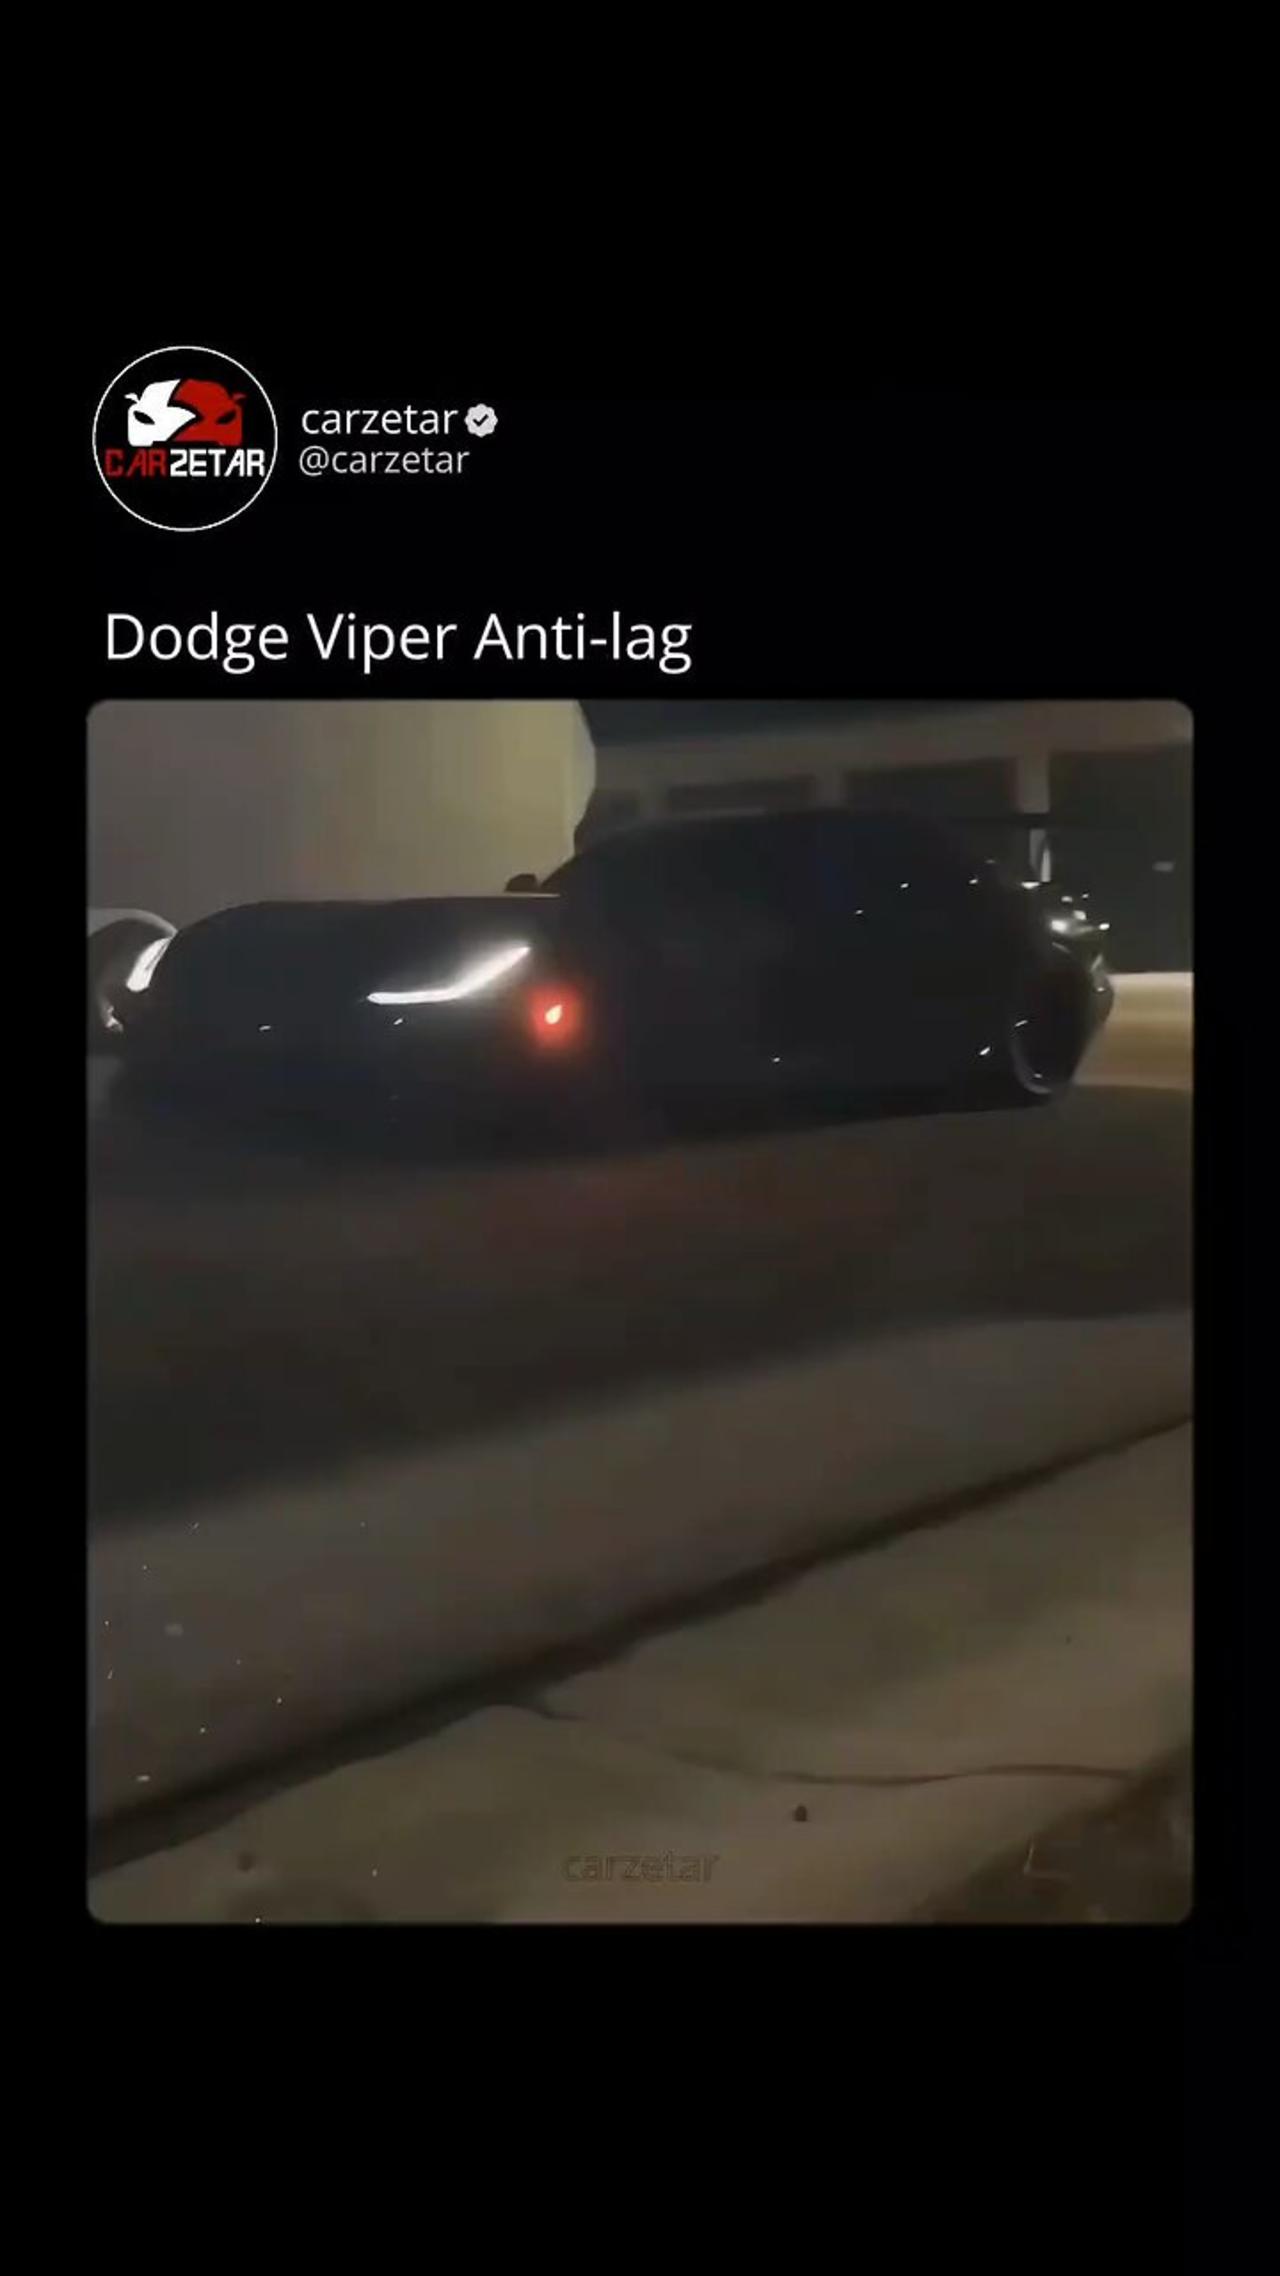 Dodge viper anti-lag sound